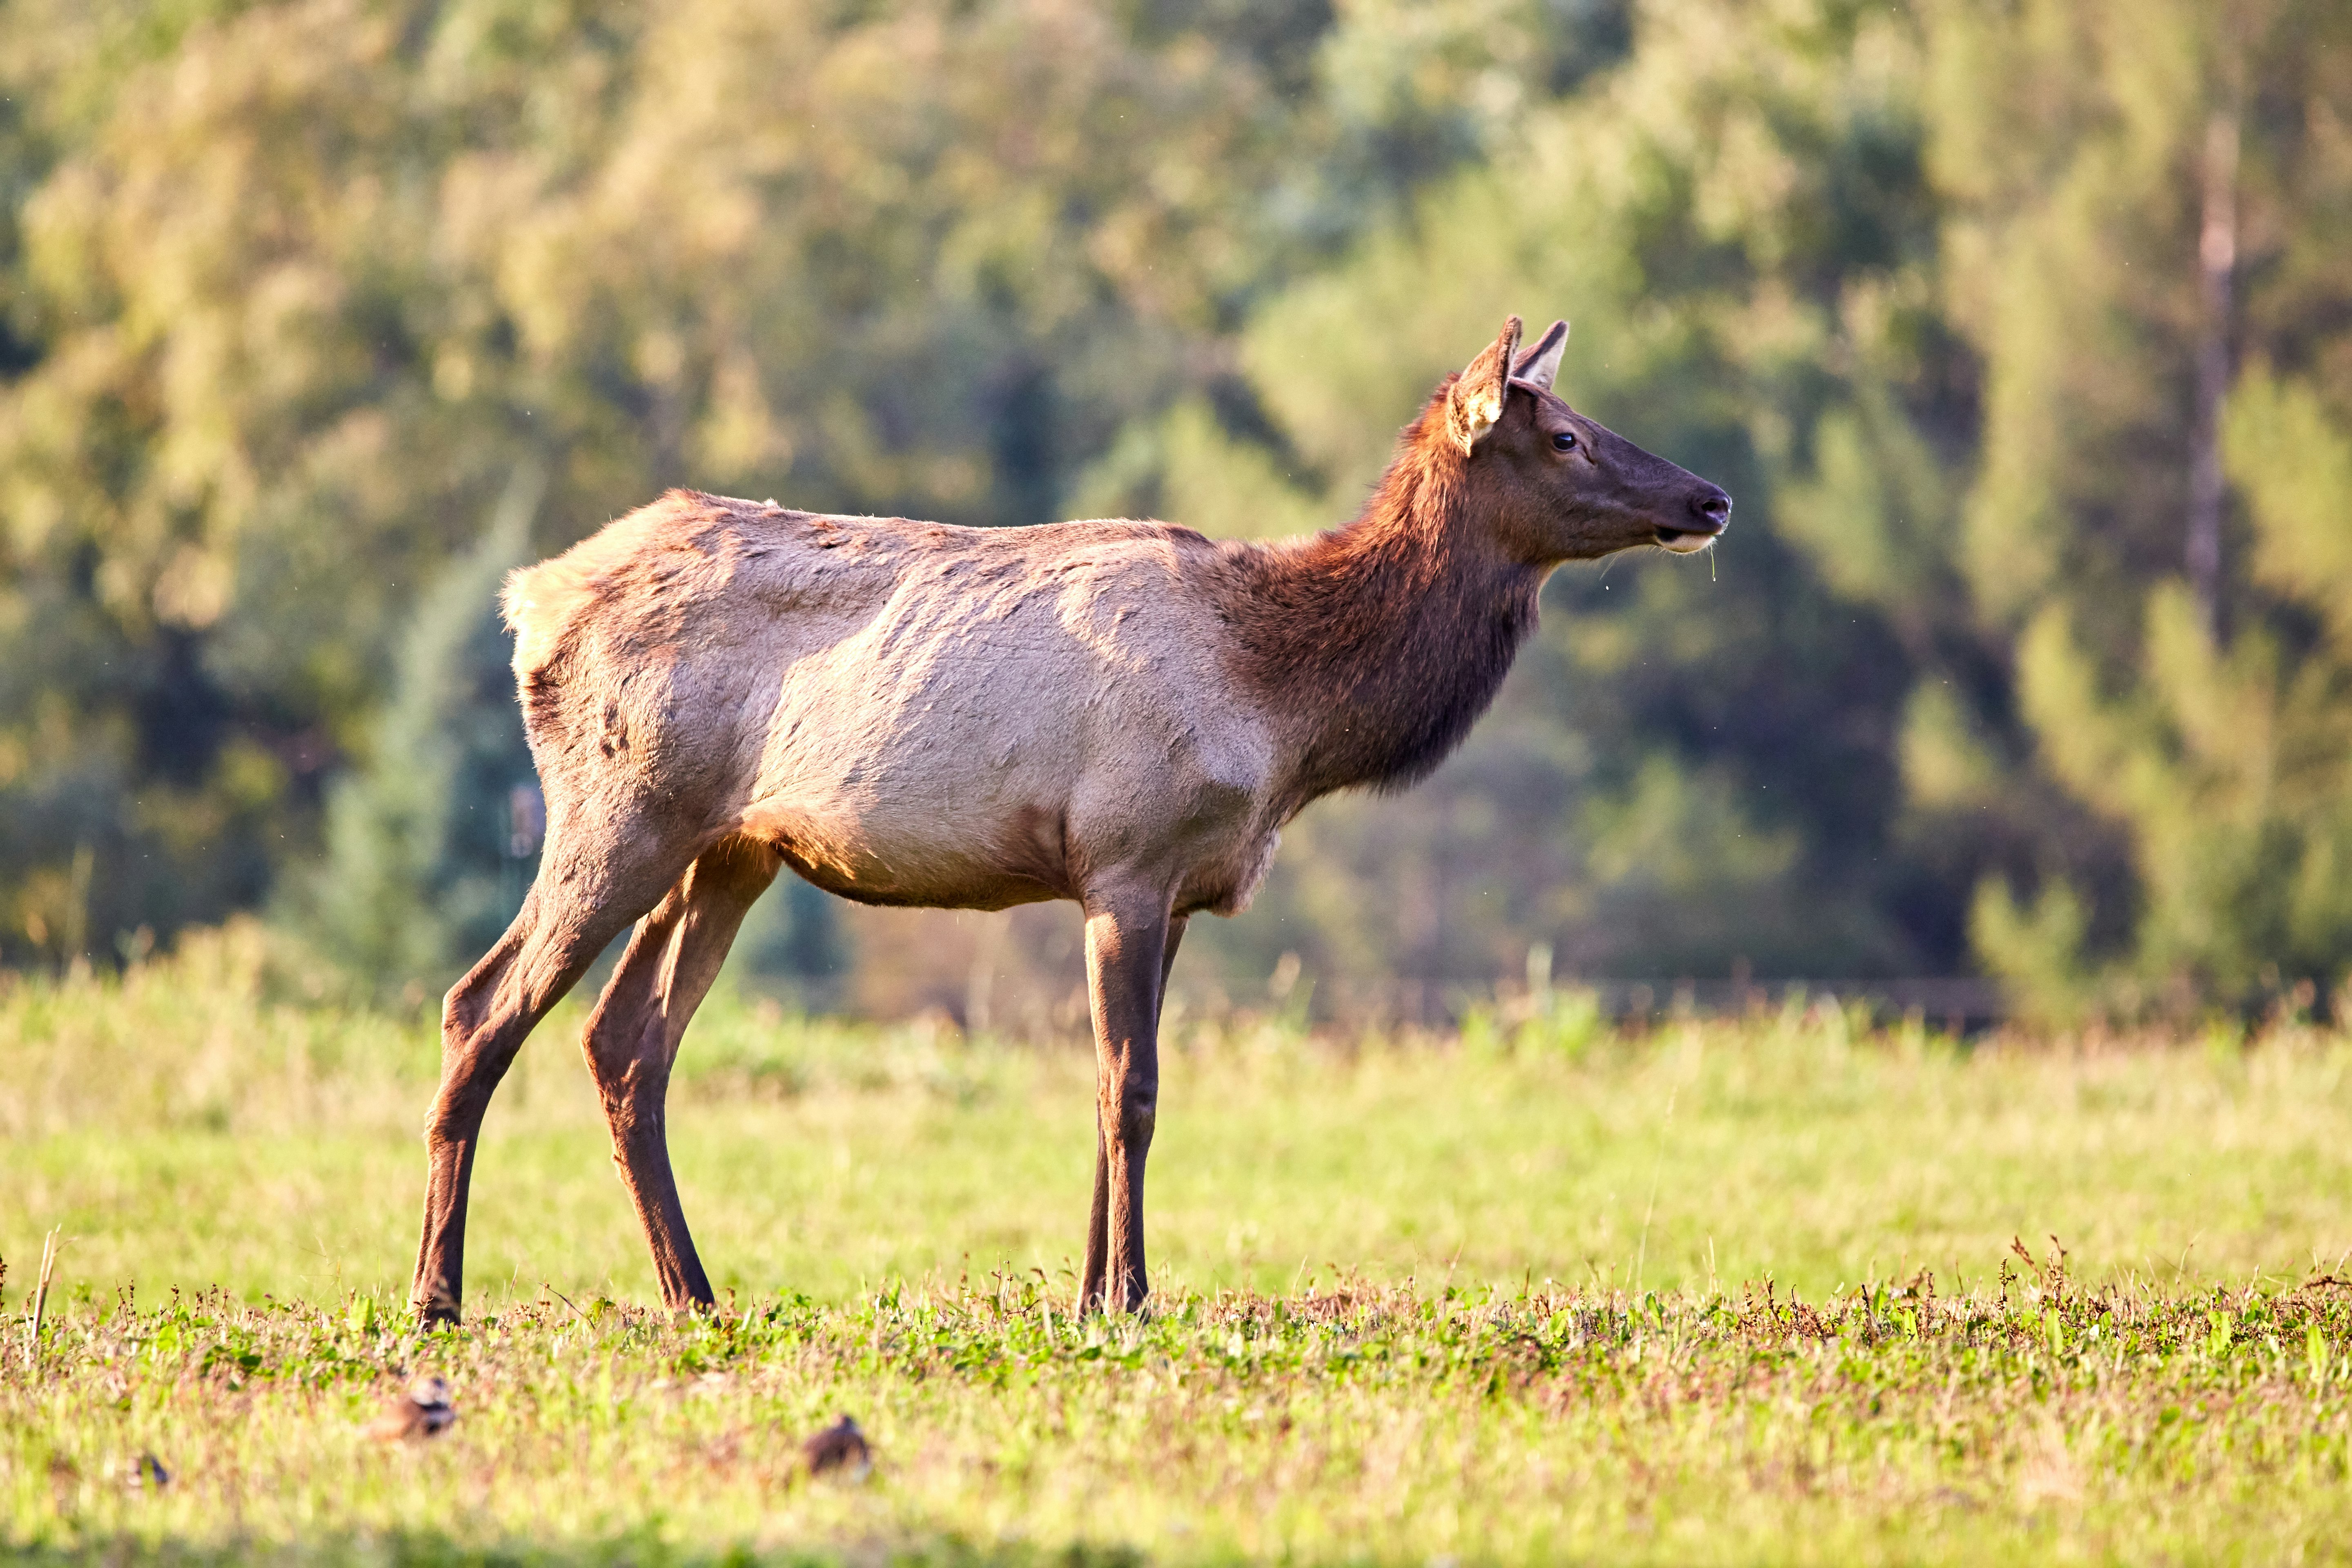 brown deer standing on grass field